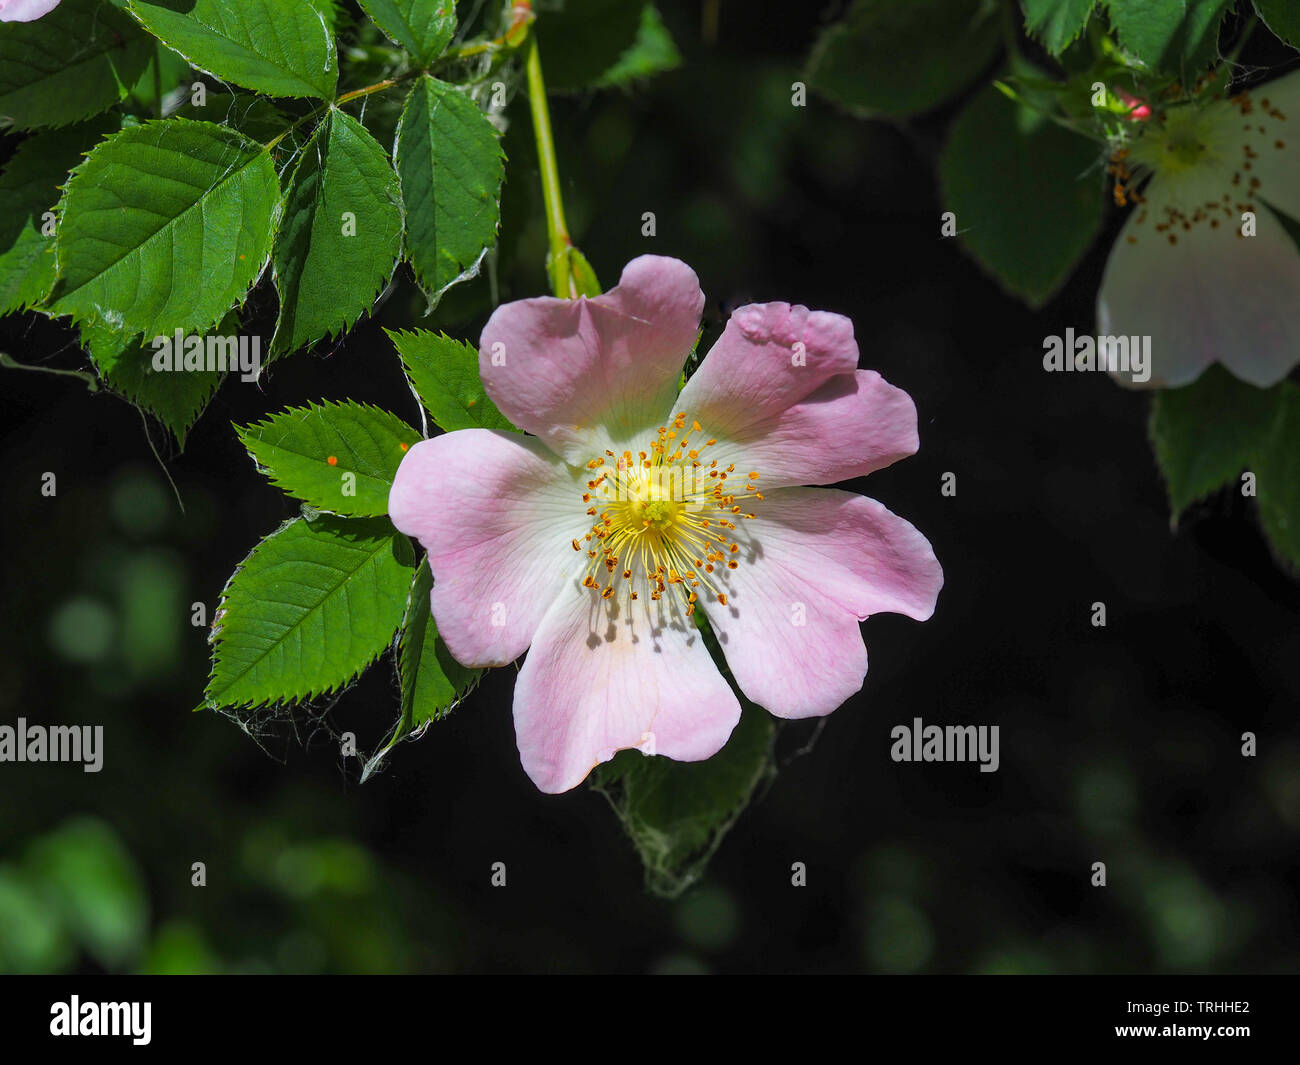 Ziemlich Wild Dog Rose Blume (Rosa Canina) und grüne Blätter Stockfoto